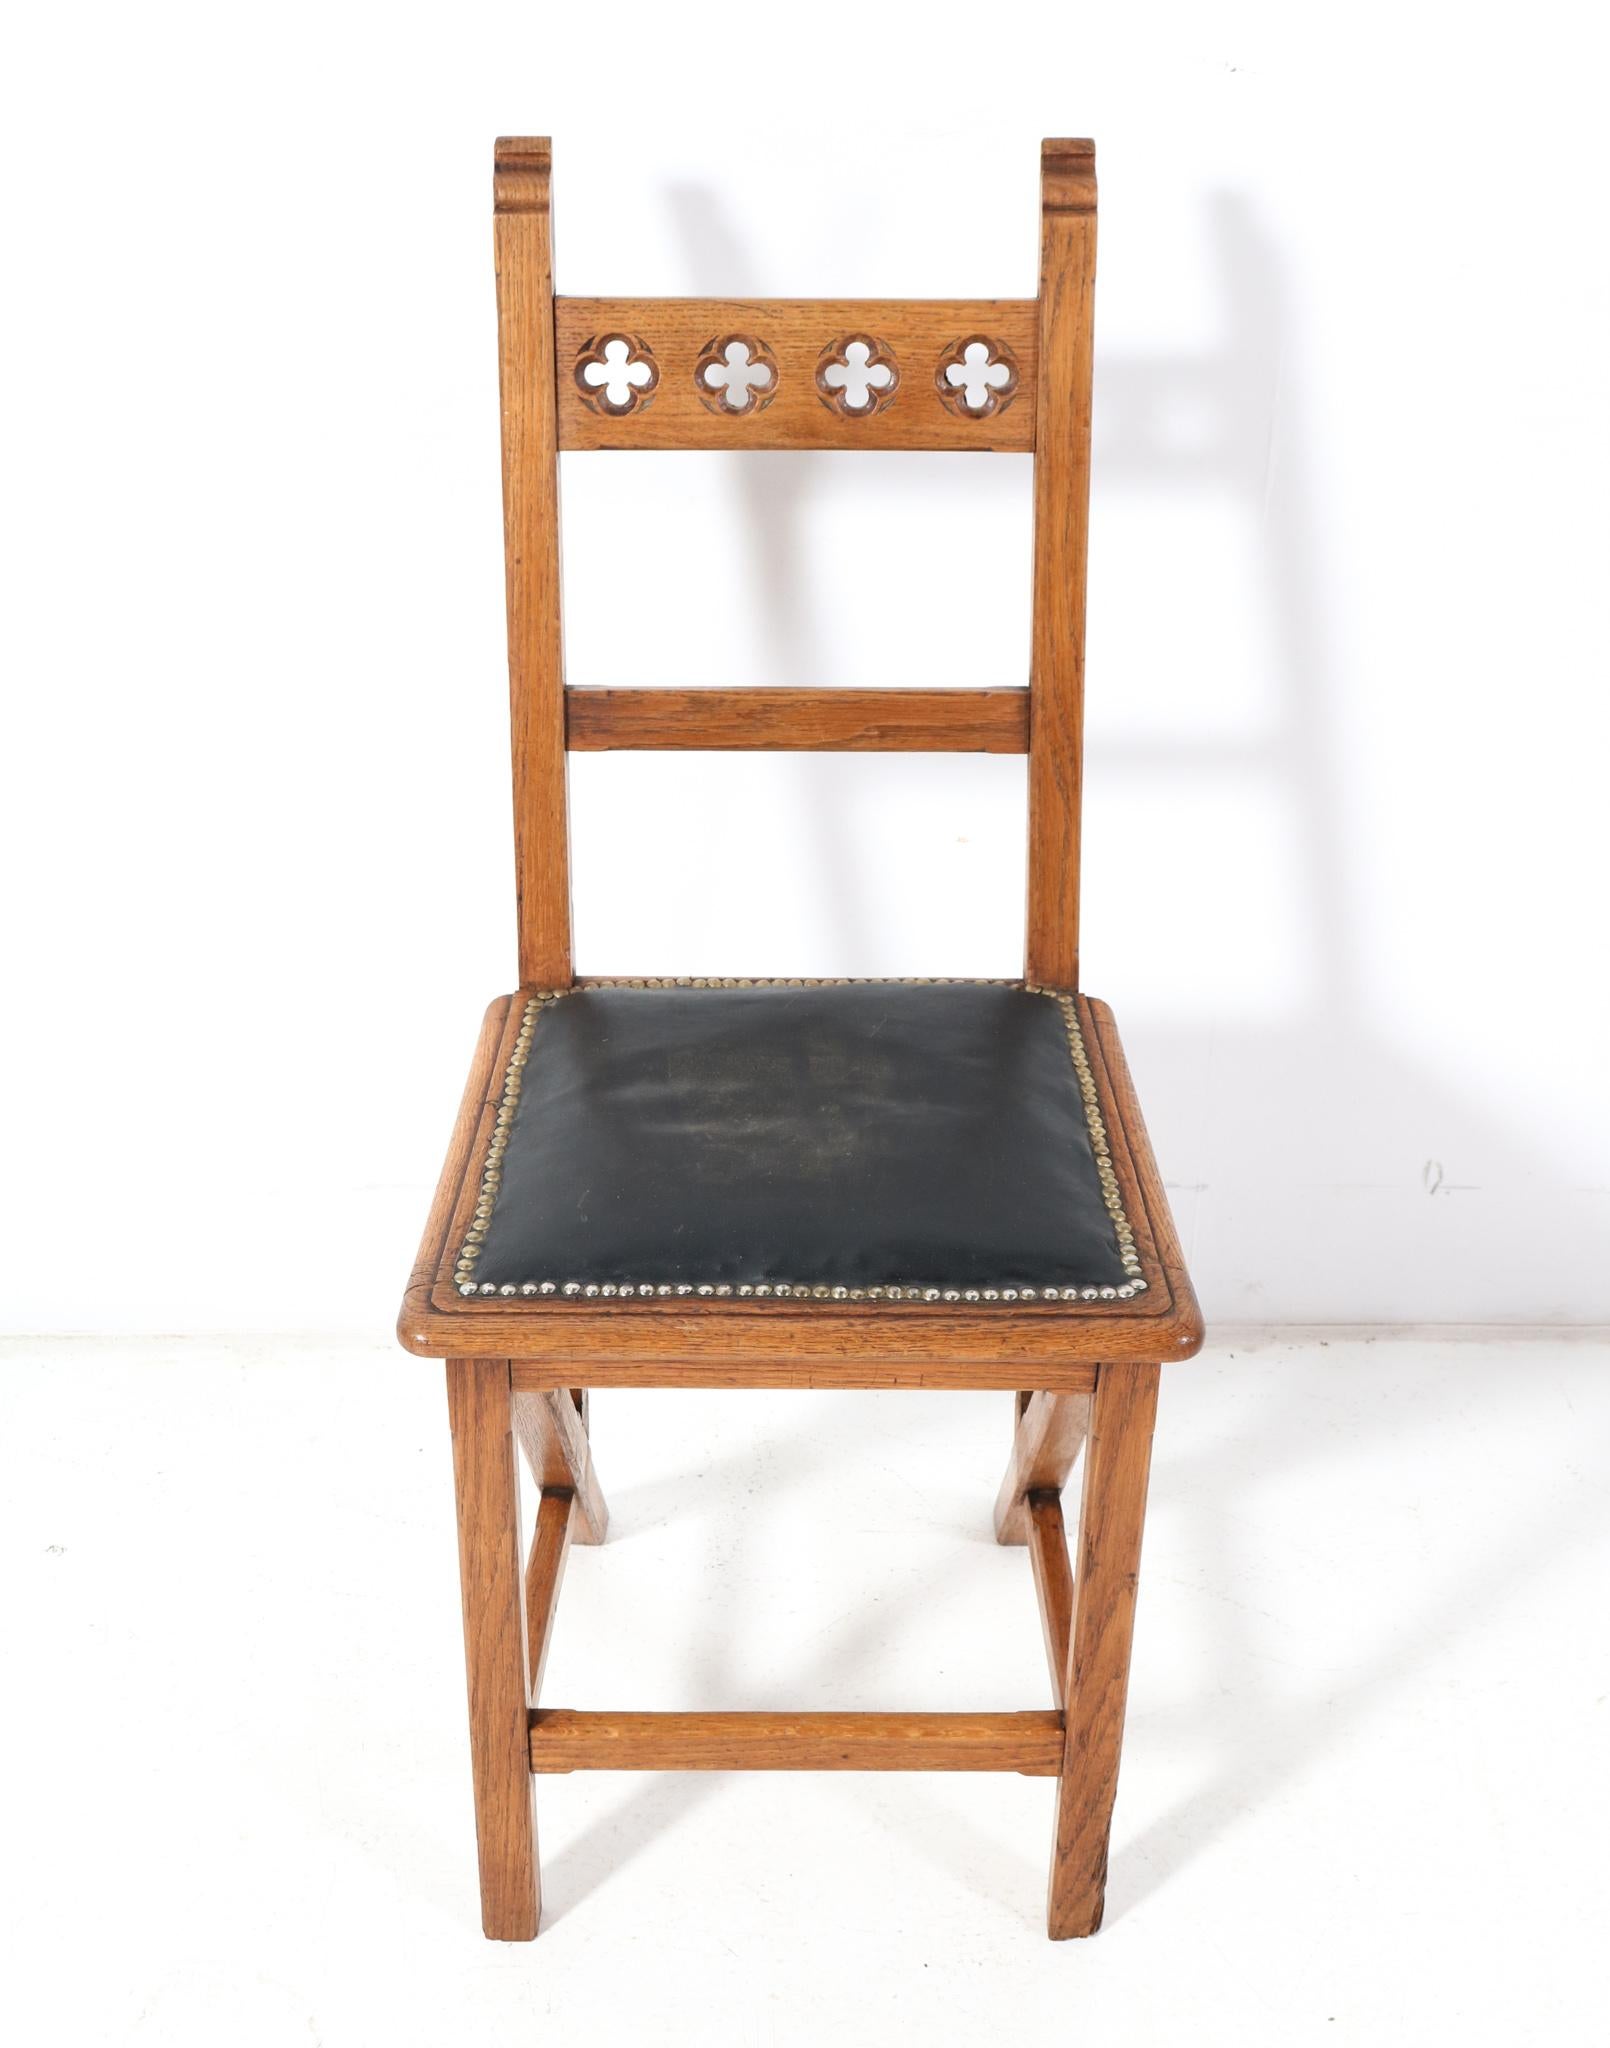 Erstaunliche und seltene Arts & Crafts Art Nouveau Beistellstuhl.
Entwurf von Hendrik Petrus Berlage.
Auffälliges niederländisches Design aus den 1900er Jahren.
Massive Eiche mit handgeschnitzten Verzierungen auf der Rückseite.
Originale